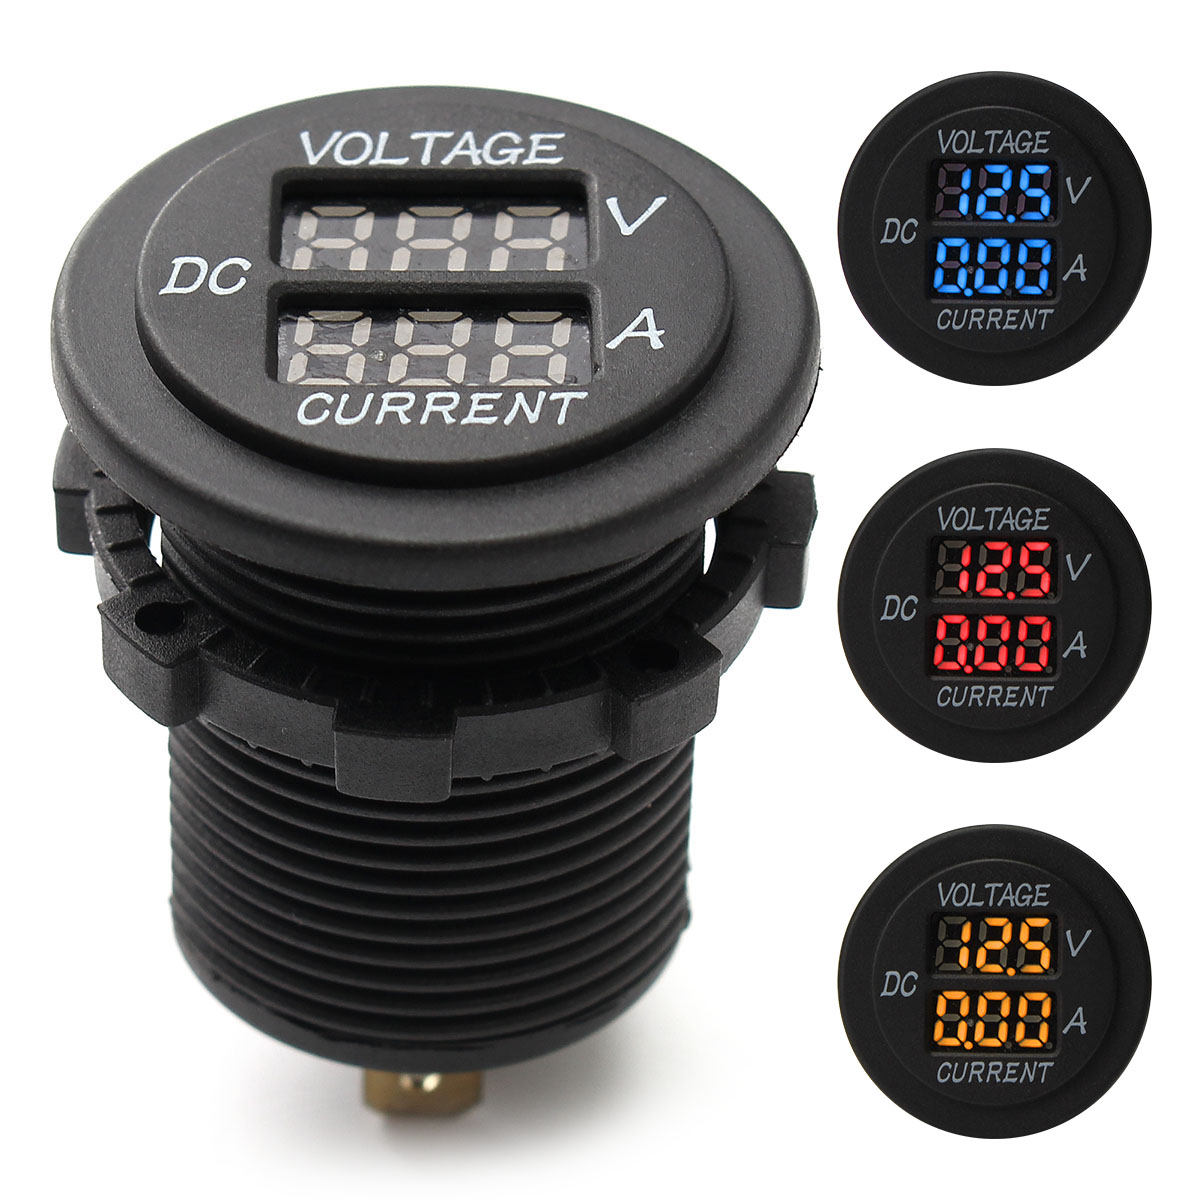 LED Digital Display Voltage Meter Voltmeter Round Car Boat DC 6V-30V 